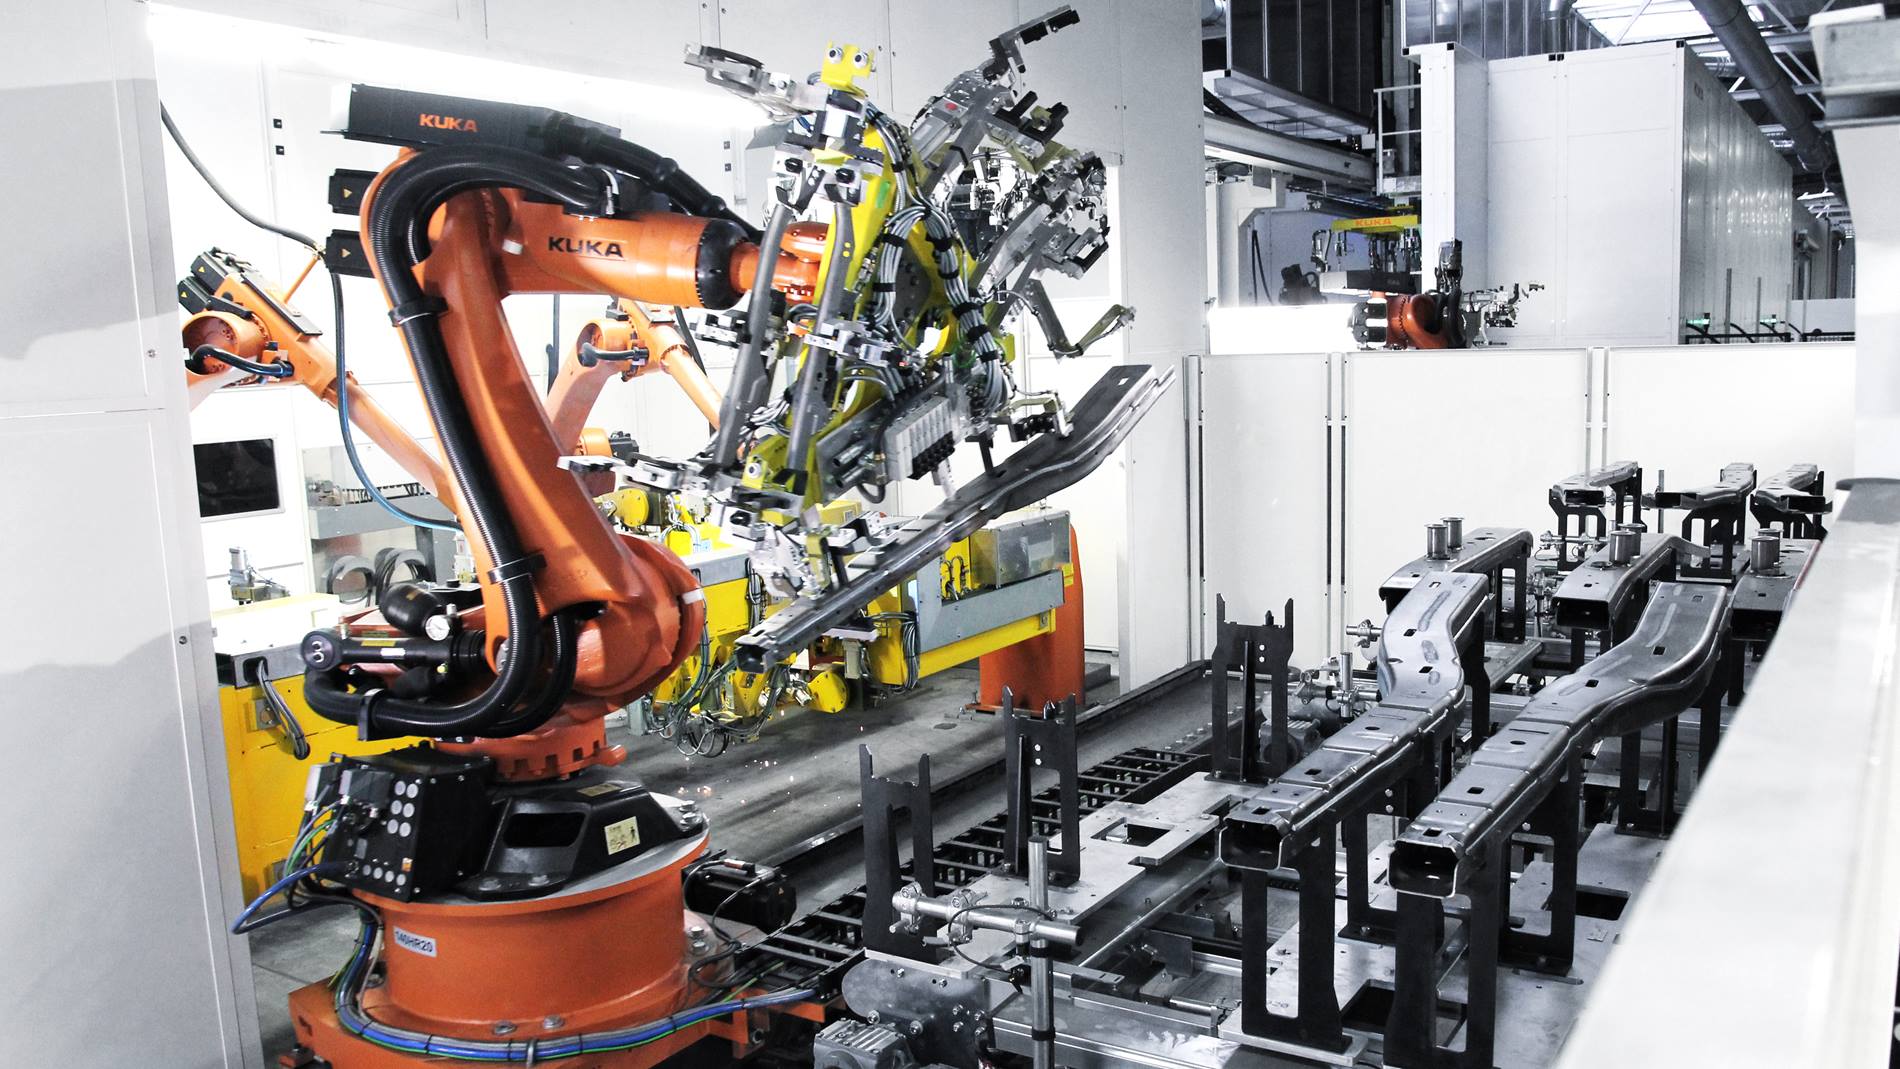 Новое оборудование для процесса. Kuka Robot конвейер. Kuka работотизтрованый участок. Роботизированный Технологический комплекс РТК. Kuka промышленные роботы Тесла.